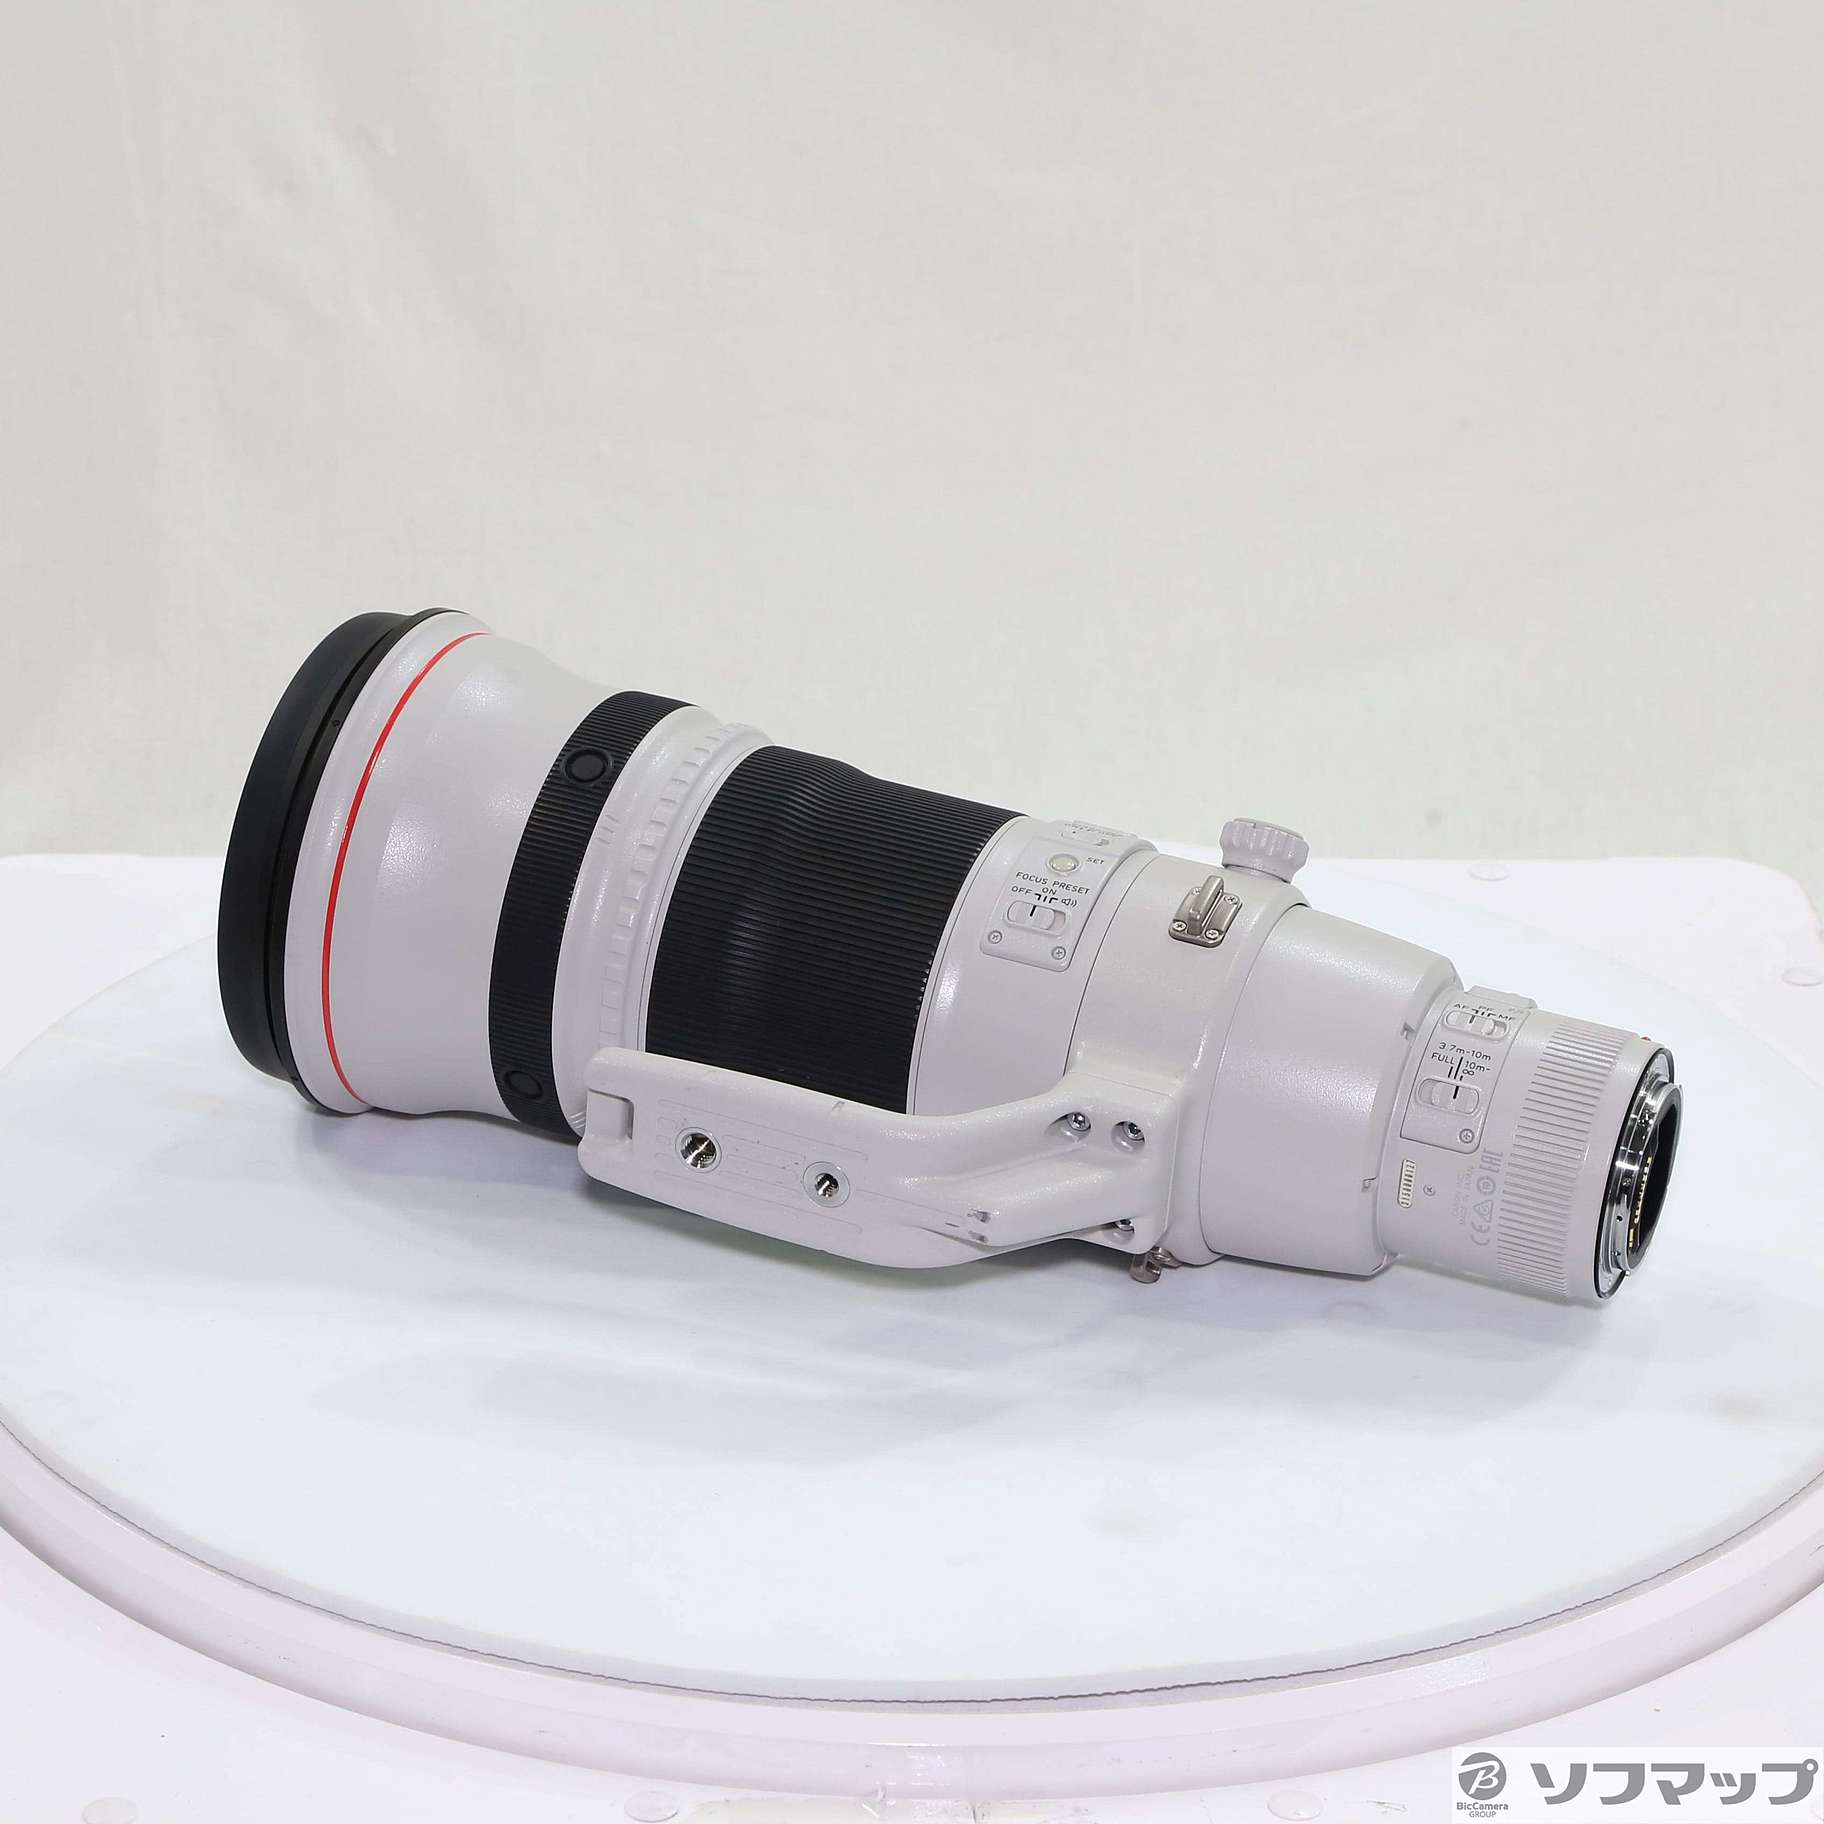 Canon EF 500mm F4L IS II USM (レンズ)